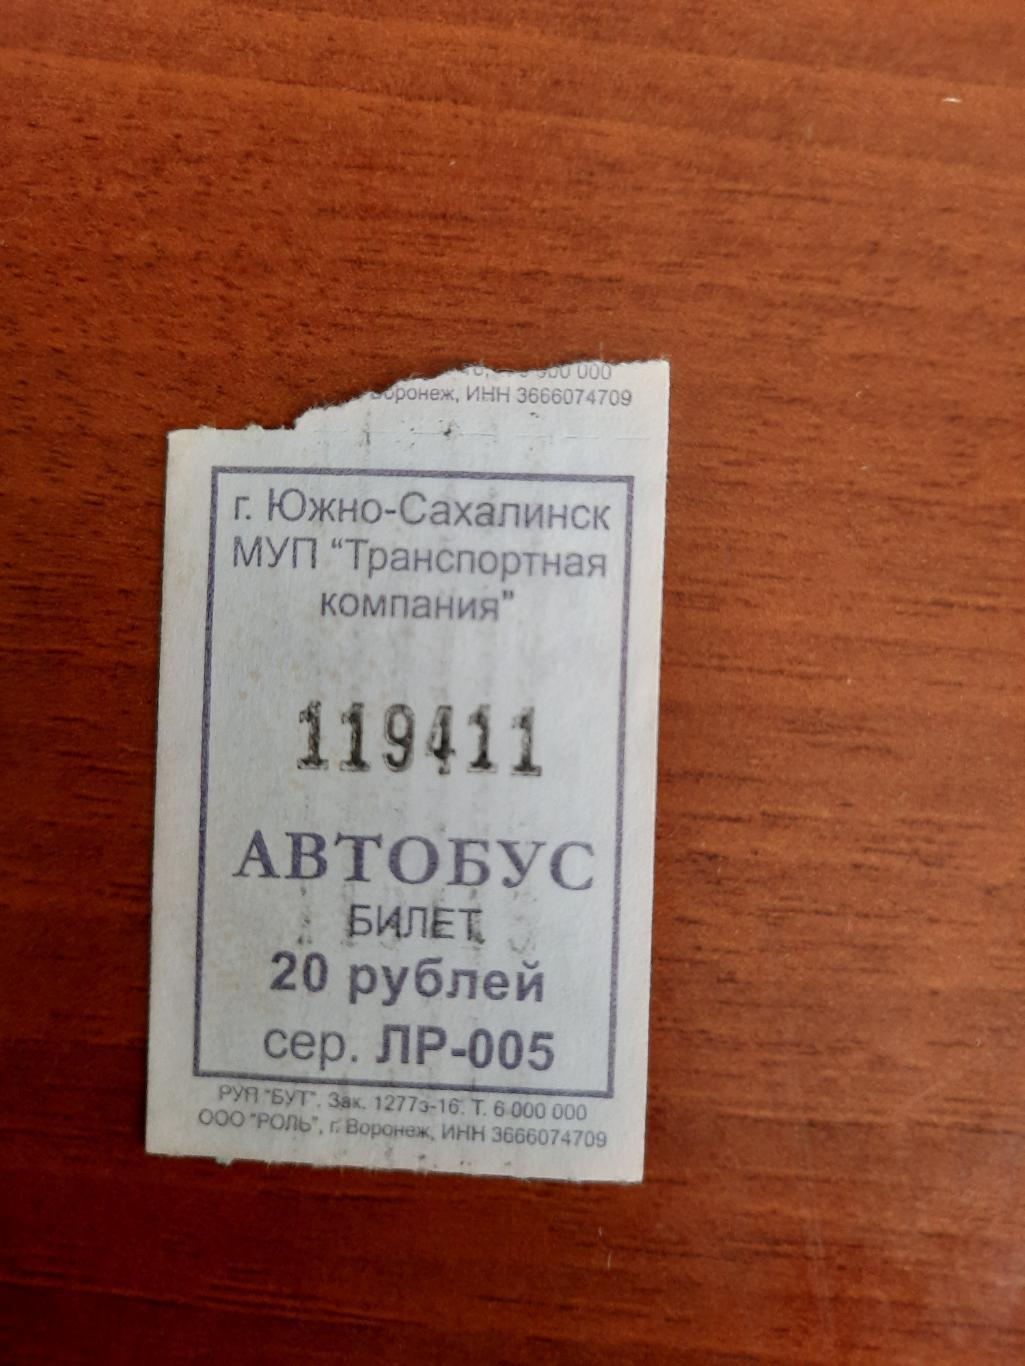 Автобусный билет с интересным номером 119411